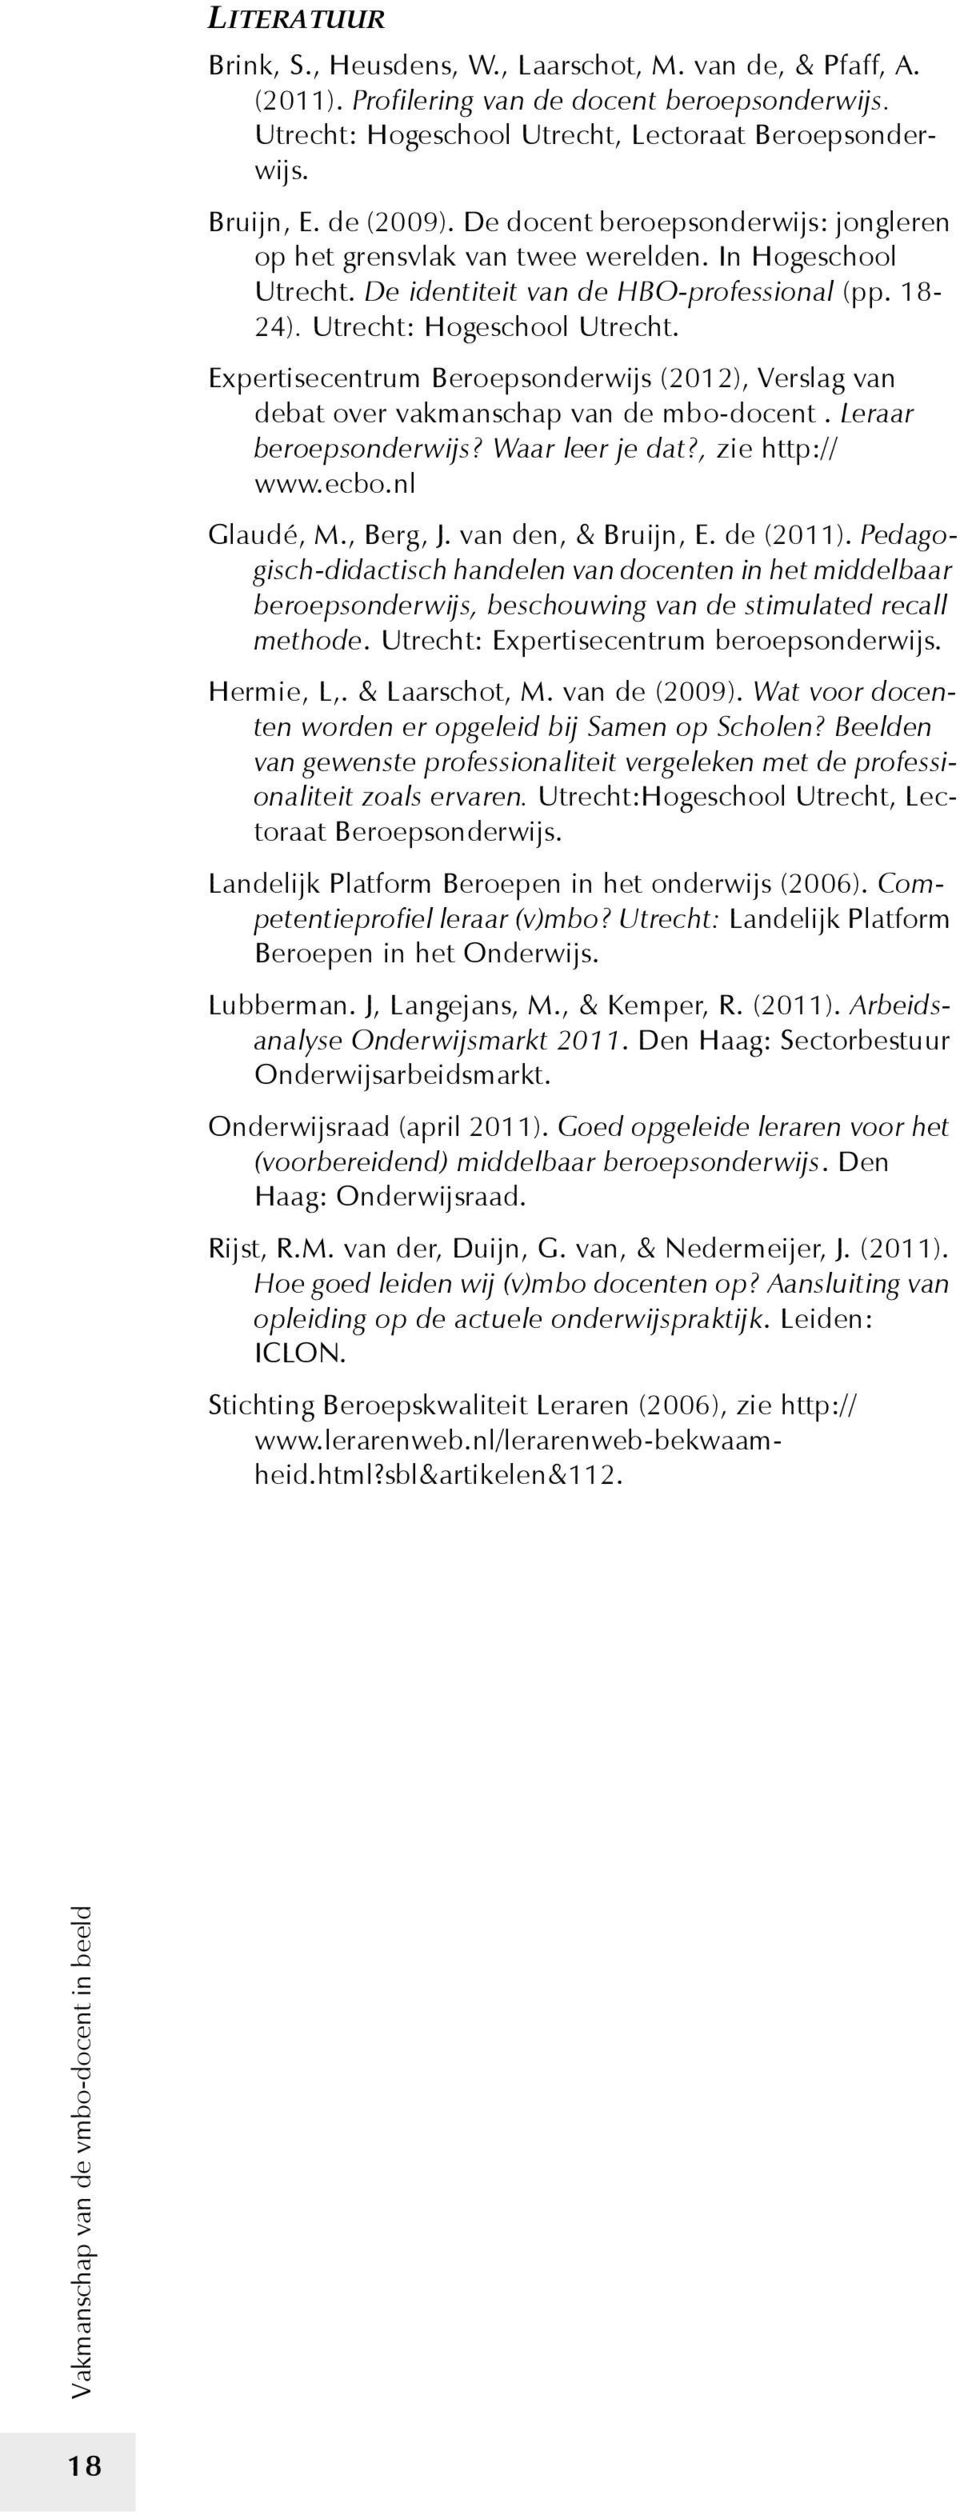 Expertisecentrum Beroepsonderwijs (2012), Verslag van debat over vakmanschap van de mbo-docent. Leraar beroepsonderwijs? Waar leer je dat?, zie http:// www.ecbo.nl Glaudé, M., Berg, J.